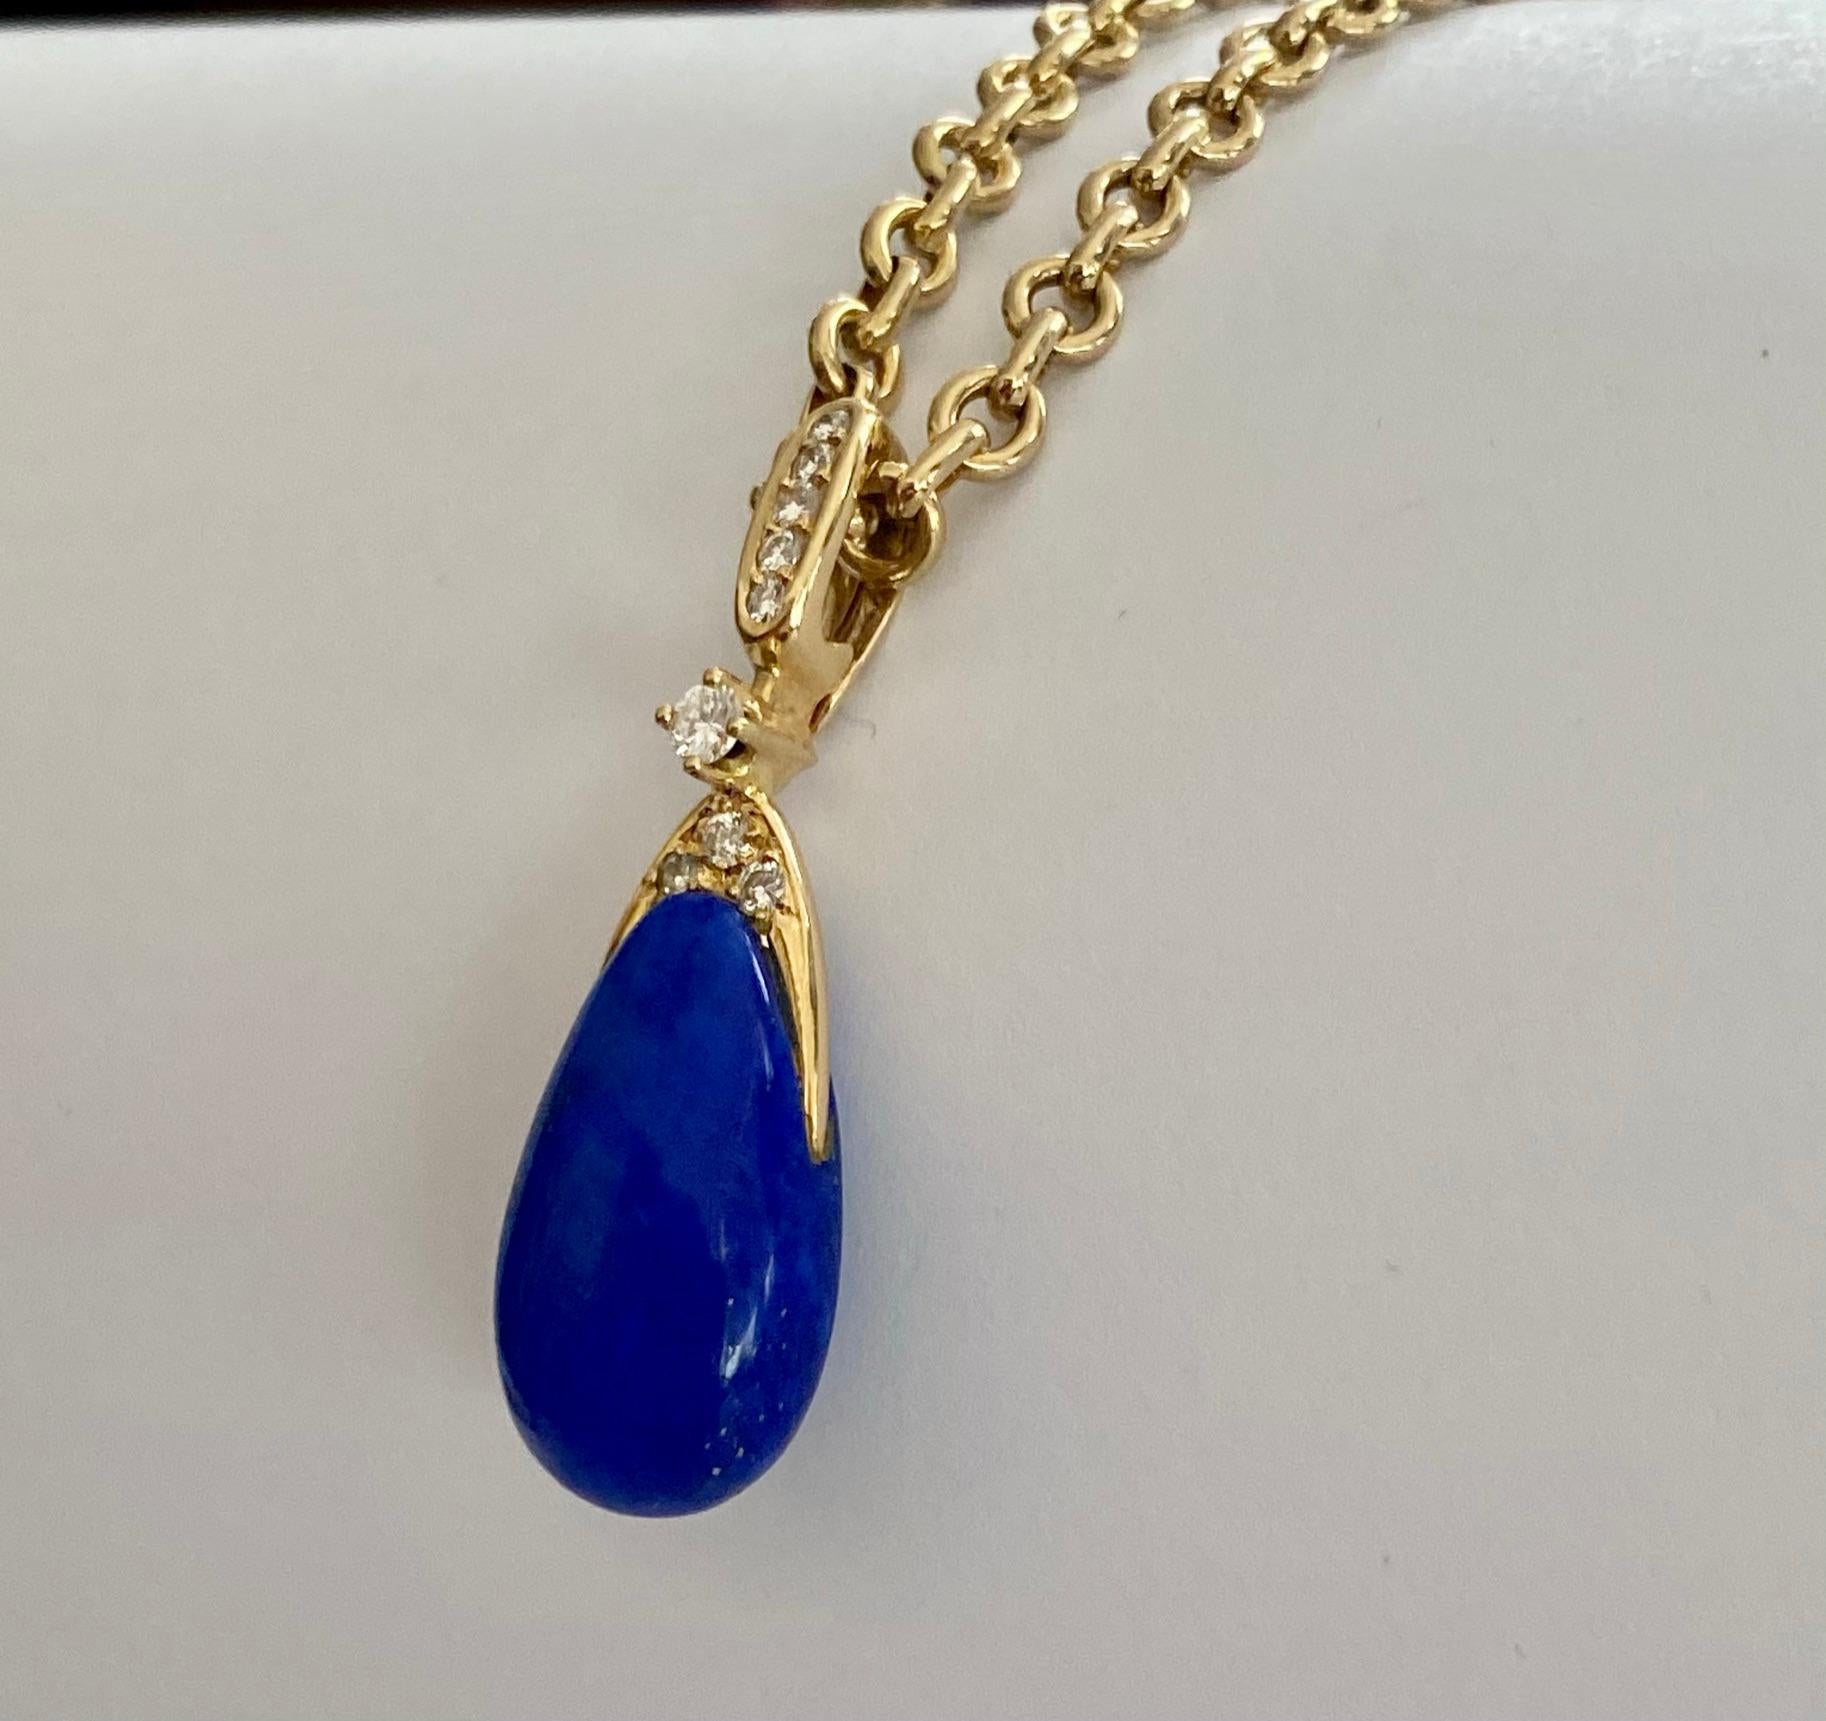 Modernist Chaumet Paris, Necklace with Pendant, Lapis Lazuli and 9 Diamonds